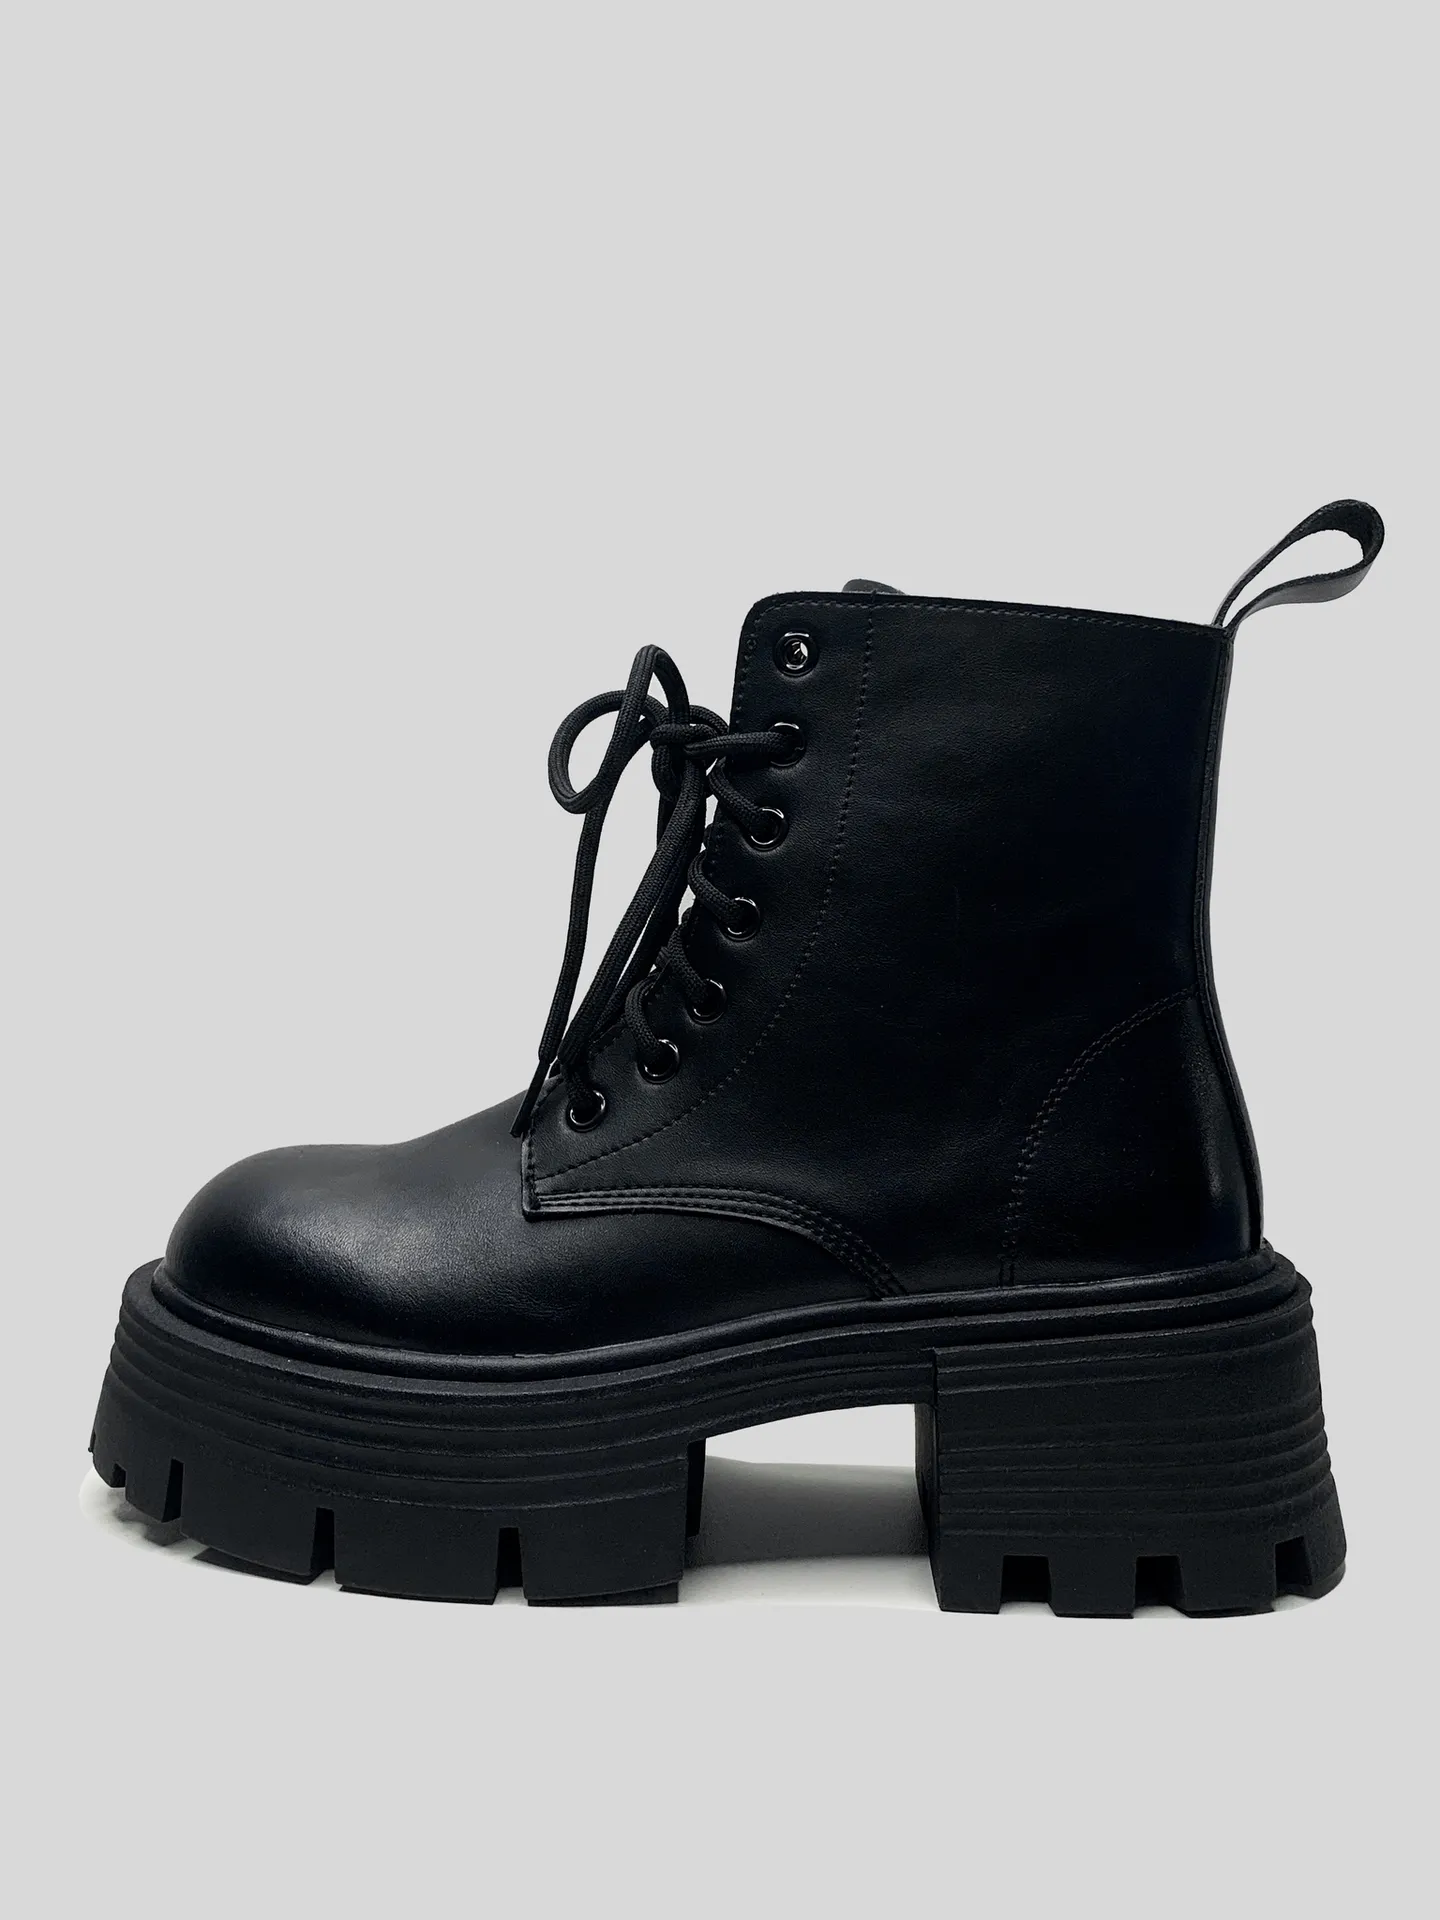 Ботинки Араз К893 кожаные со шнуровкой и молнией сбоку\Черный Nadya